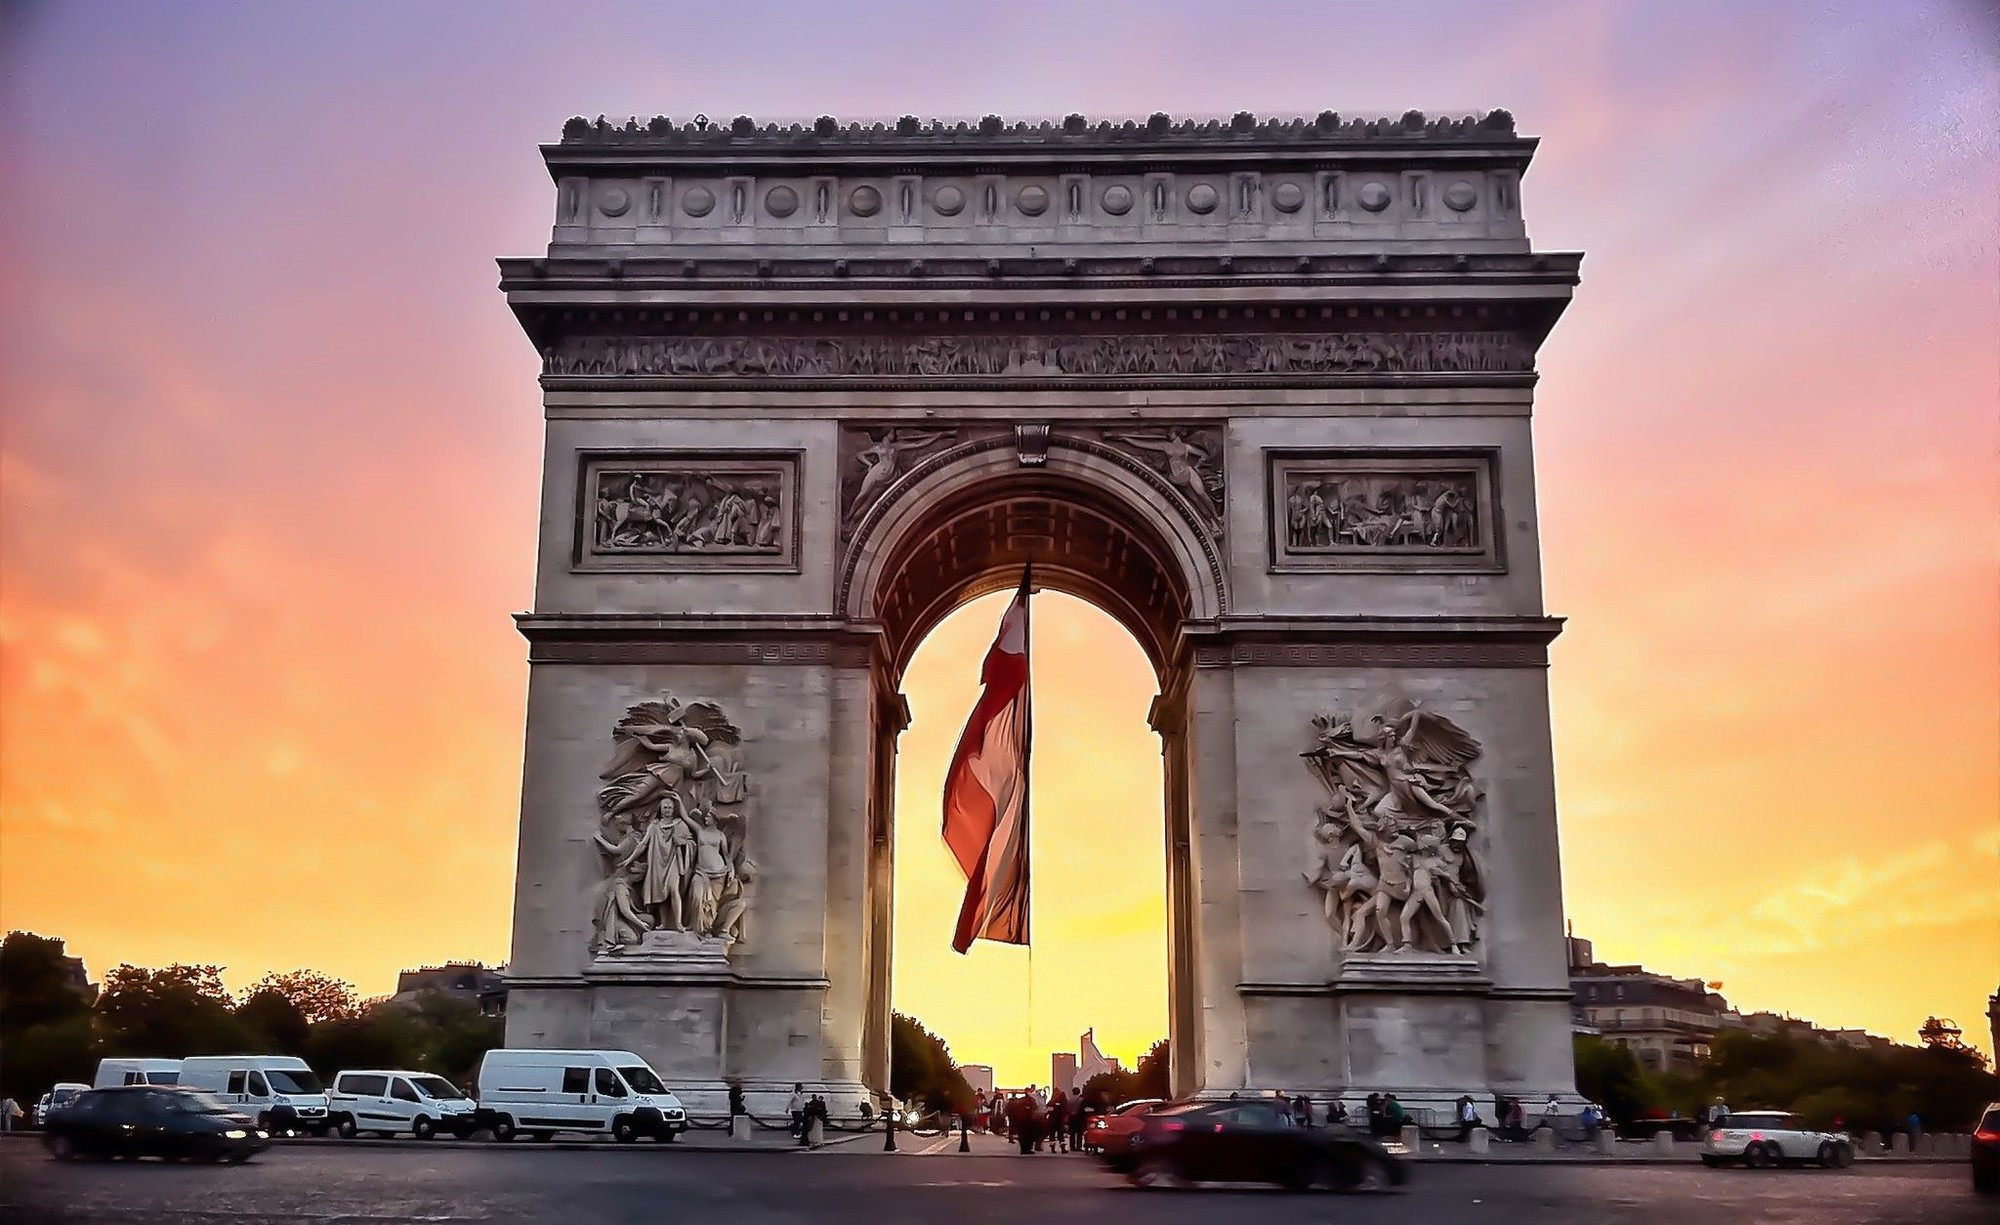 Check in đại lộ Champs-Elysees lừng danh của nước Pháp hoa lệ - ảnh 4